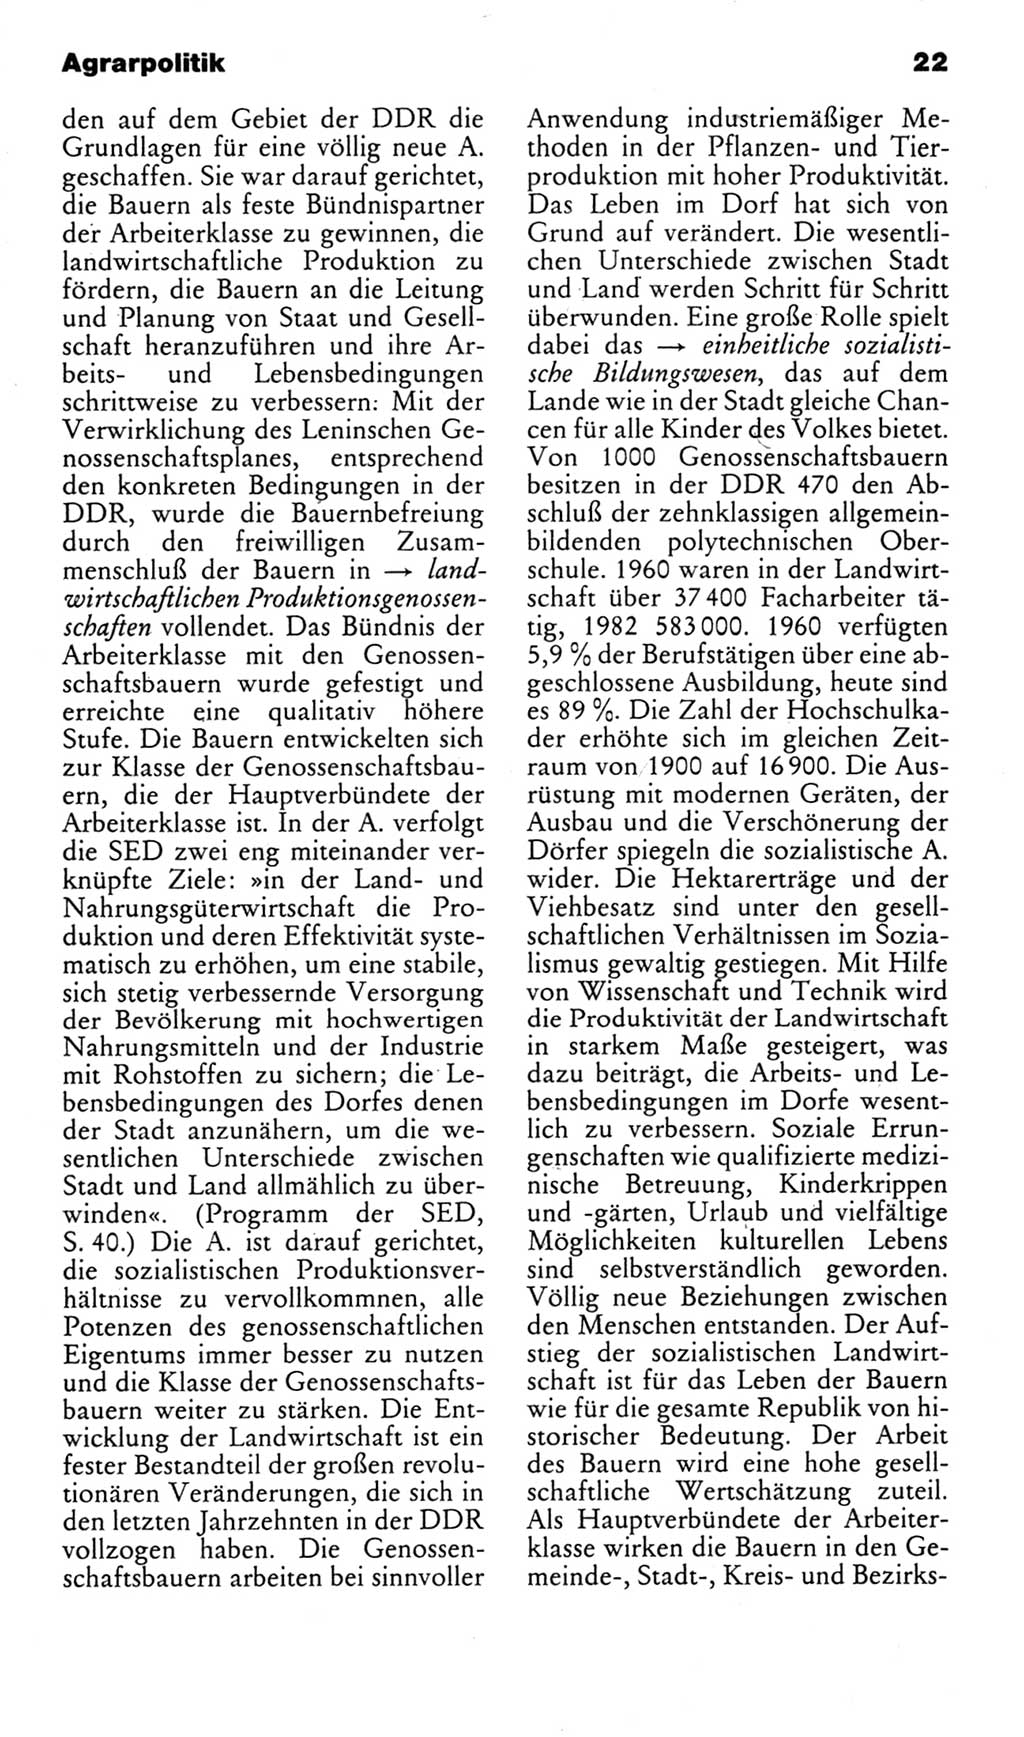 Kleines politisches Wörterbuch [Deutsche Demokratische Republik (DDR)] 1985, Seite 22 (Kl. pol. Wb. DDR 1985, S. 22)